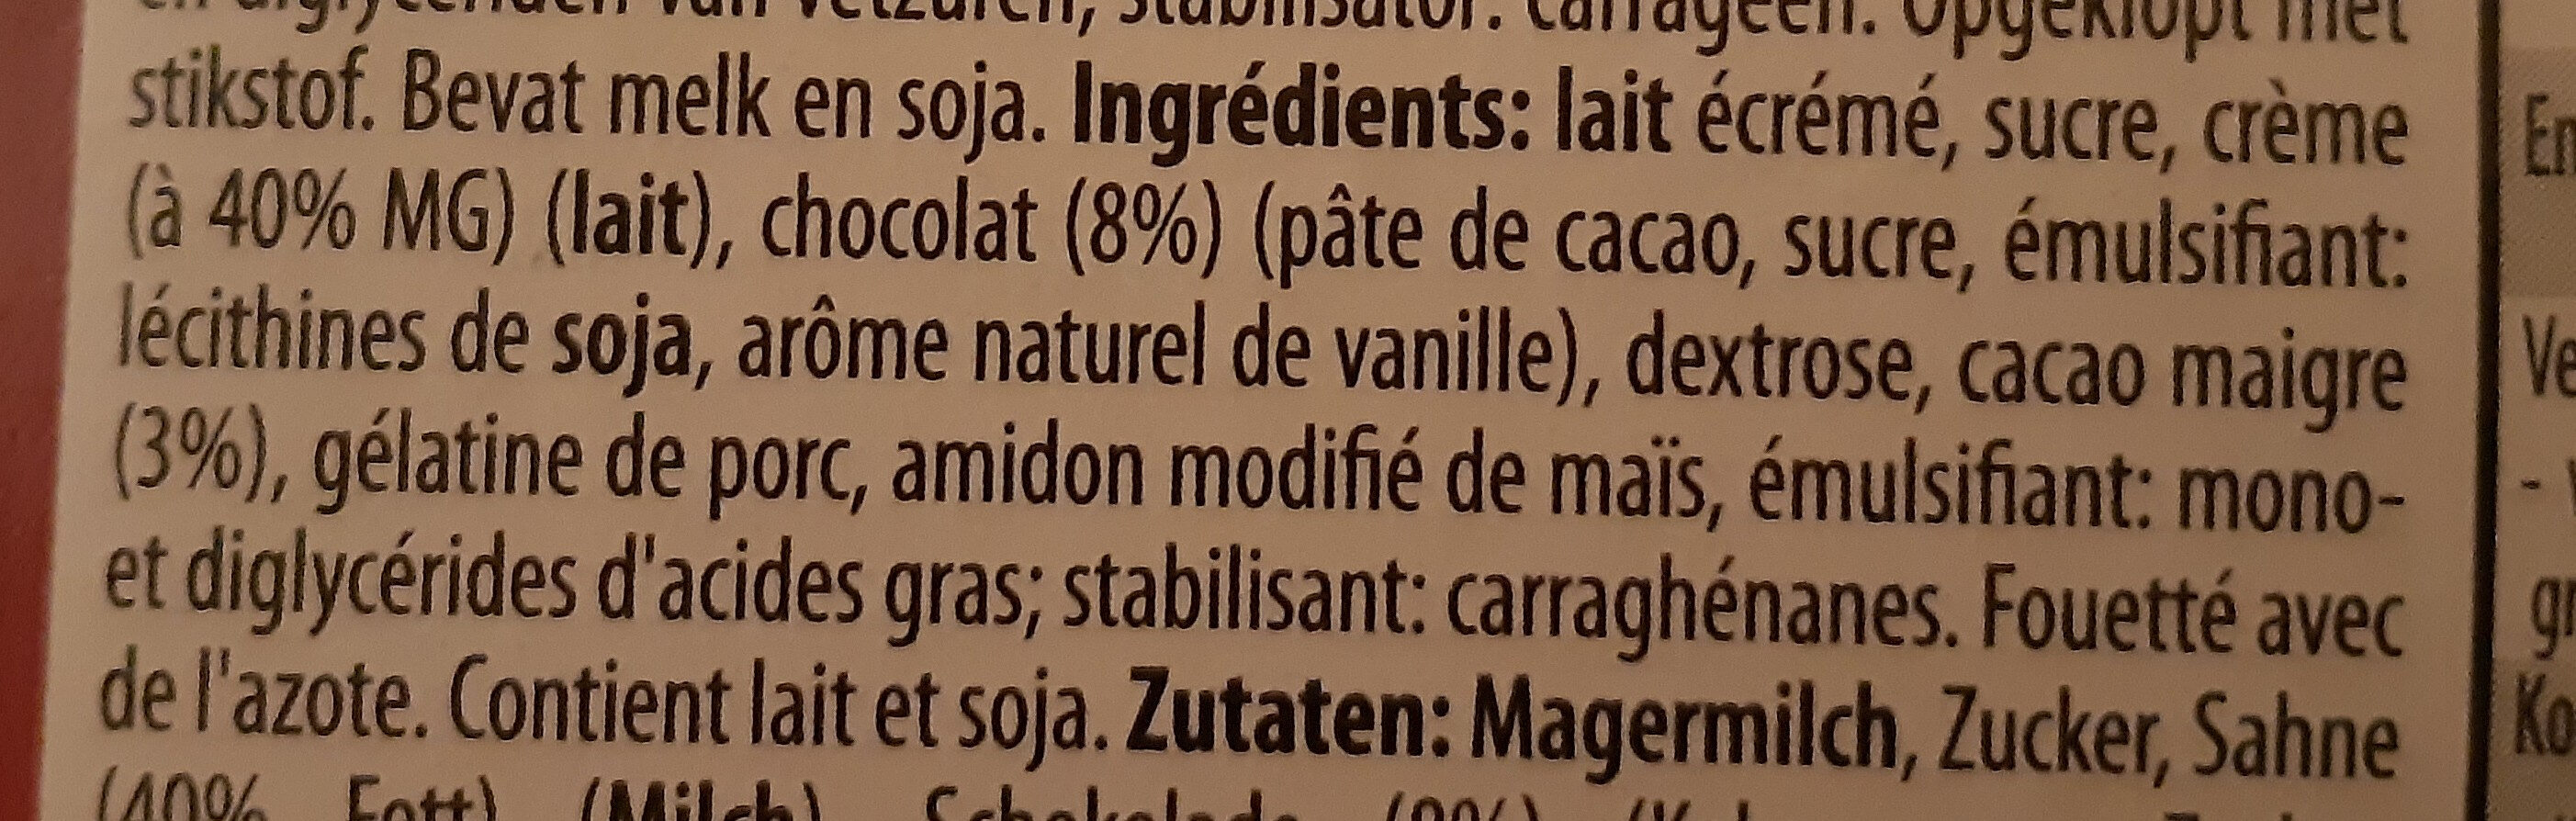 Chocolade mousse au chocolat - Ingrédients